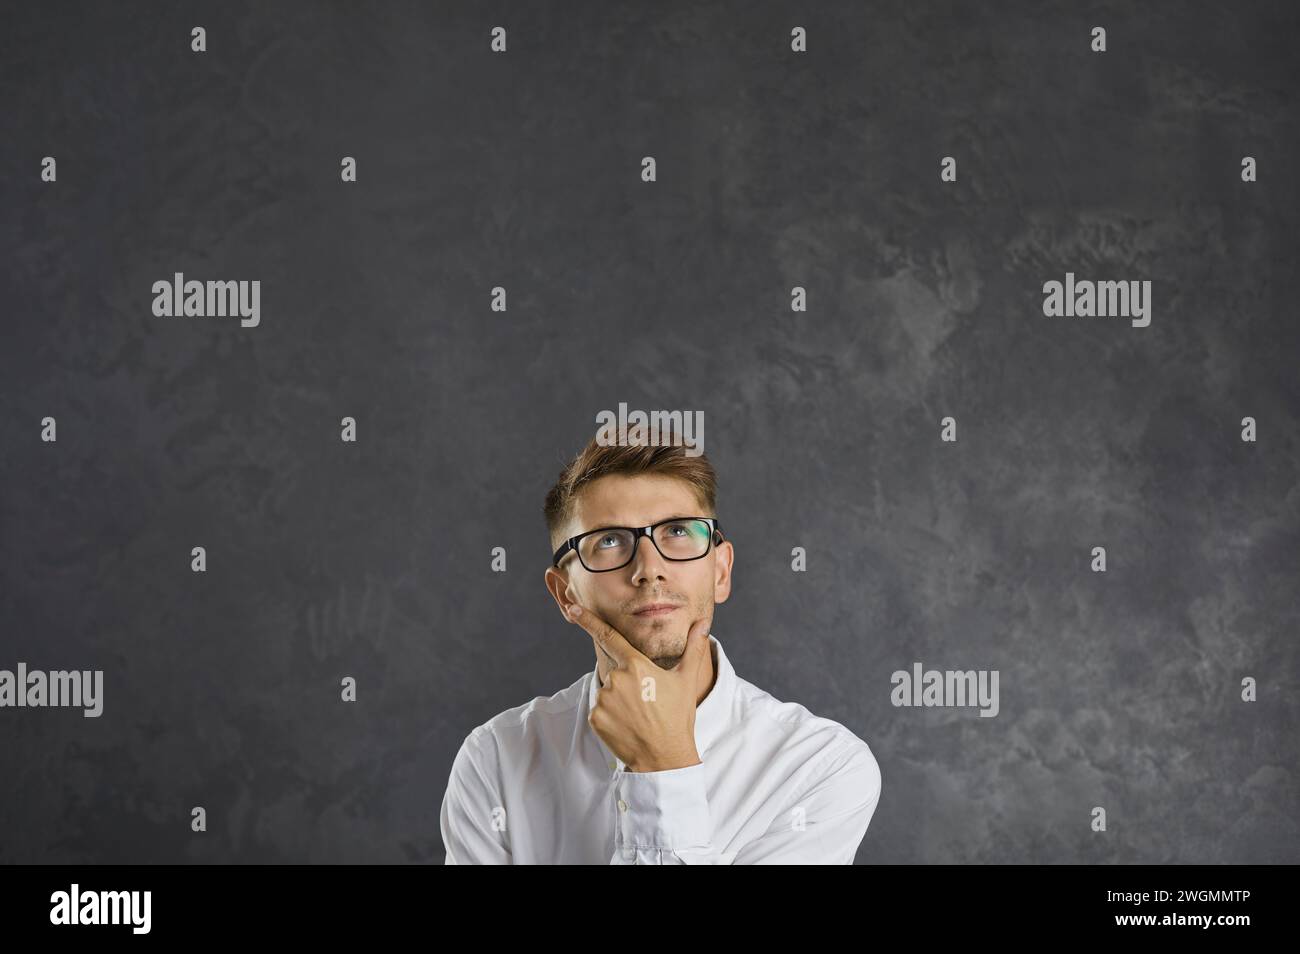 Ritratto di un giovane confuso e perplesso che sta pensando attentamente a qualcosa. Foto Stock